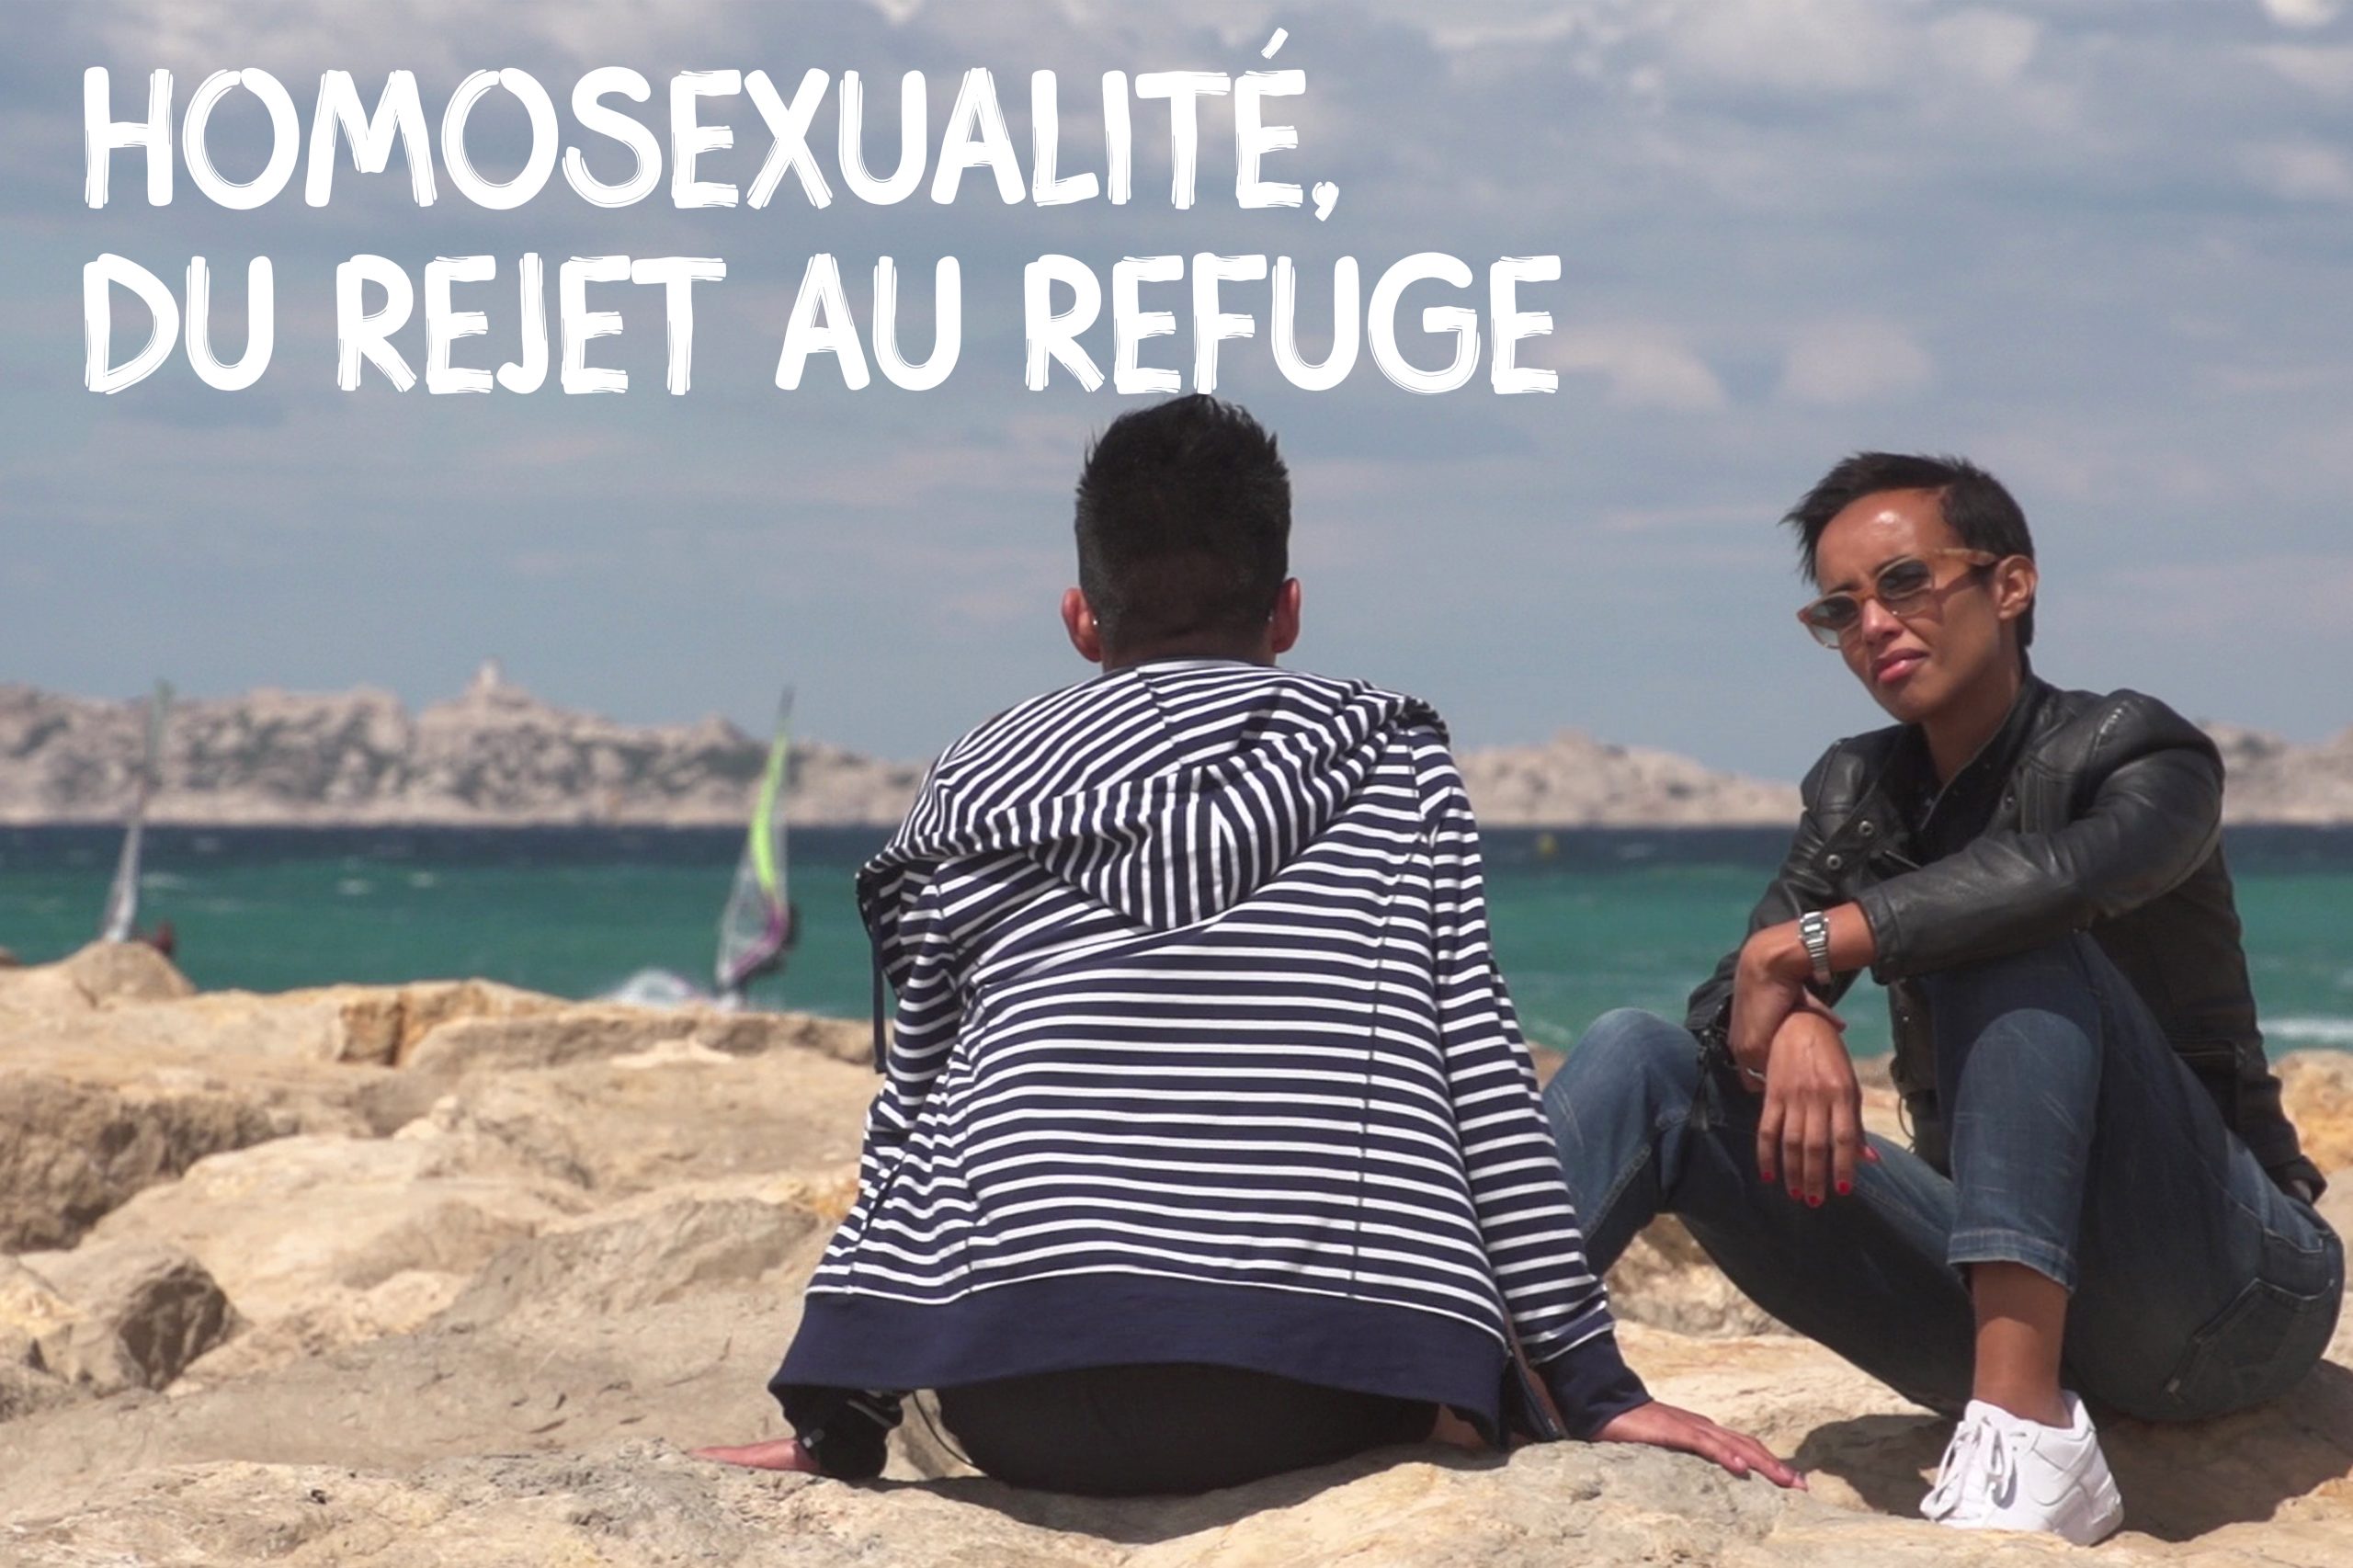 Homosexualité – du rejet au refuge